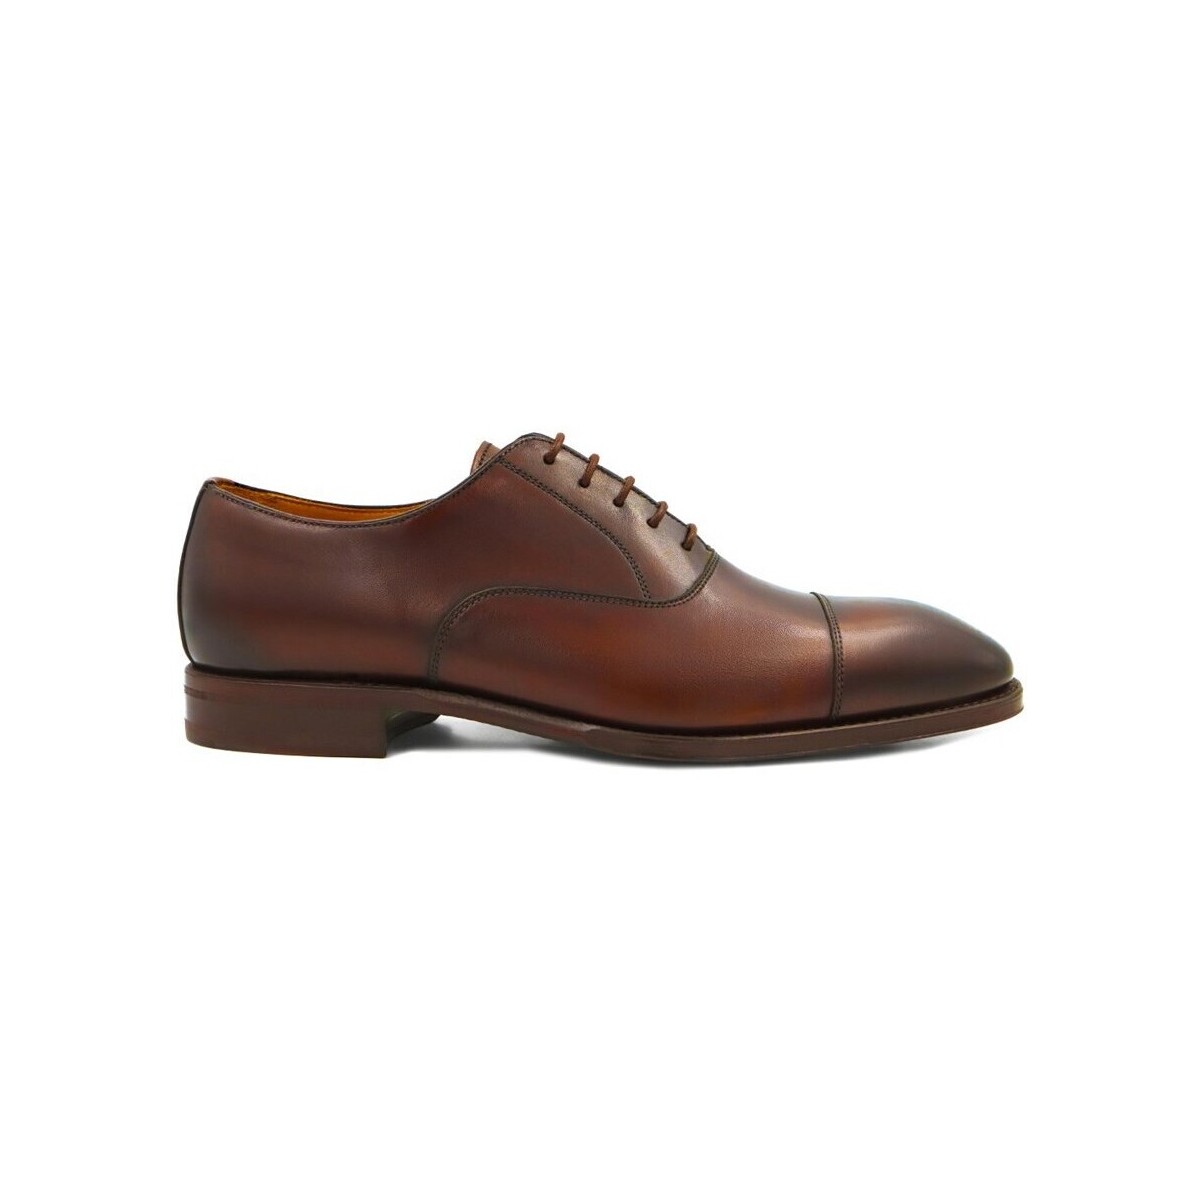 Chaussures Homme Richelieu Finsbury Shoes CONSUL Marron